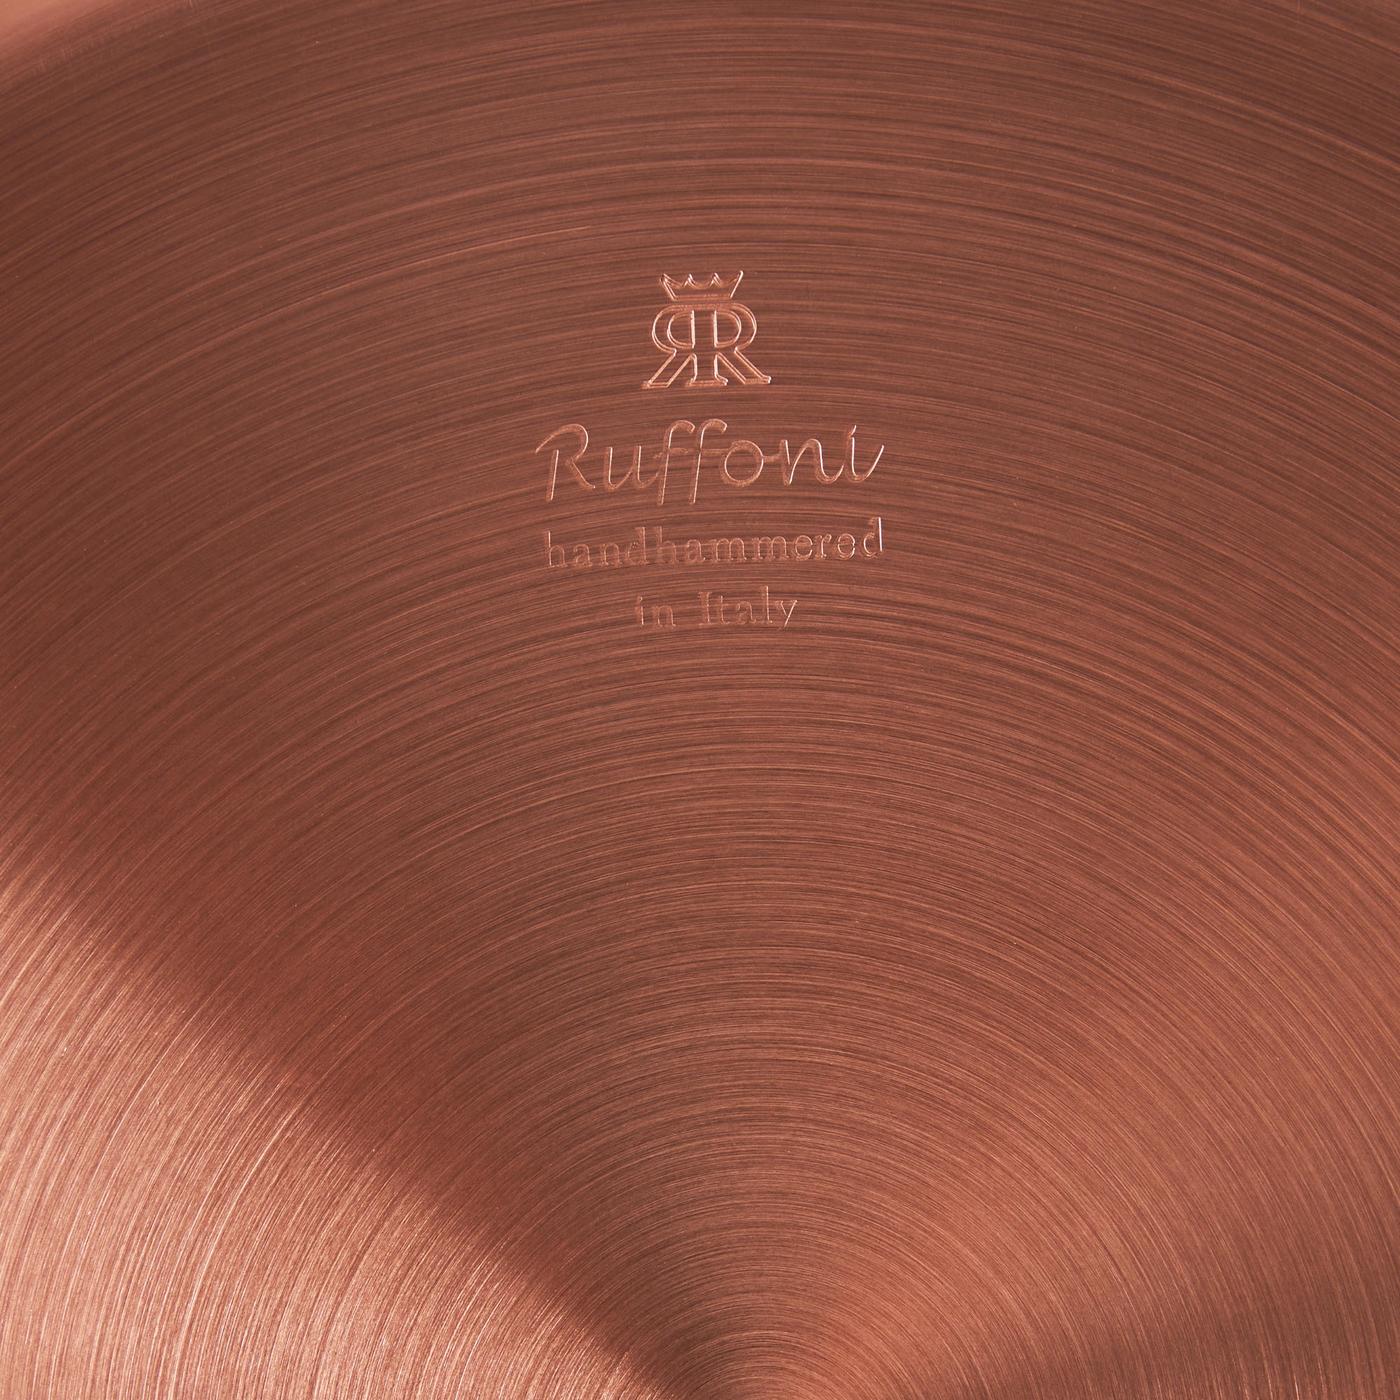 Ruffoni Symphonia Cupra Copper 4 qt. Covered Saute Pan